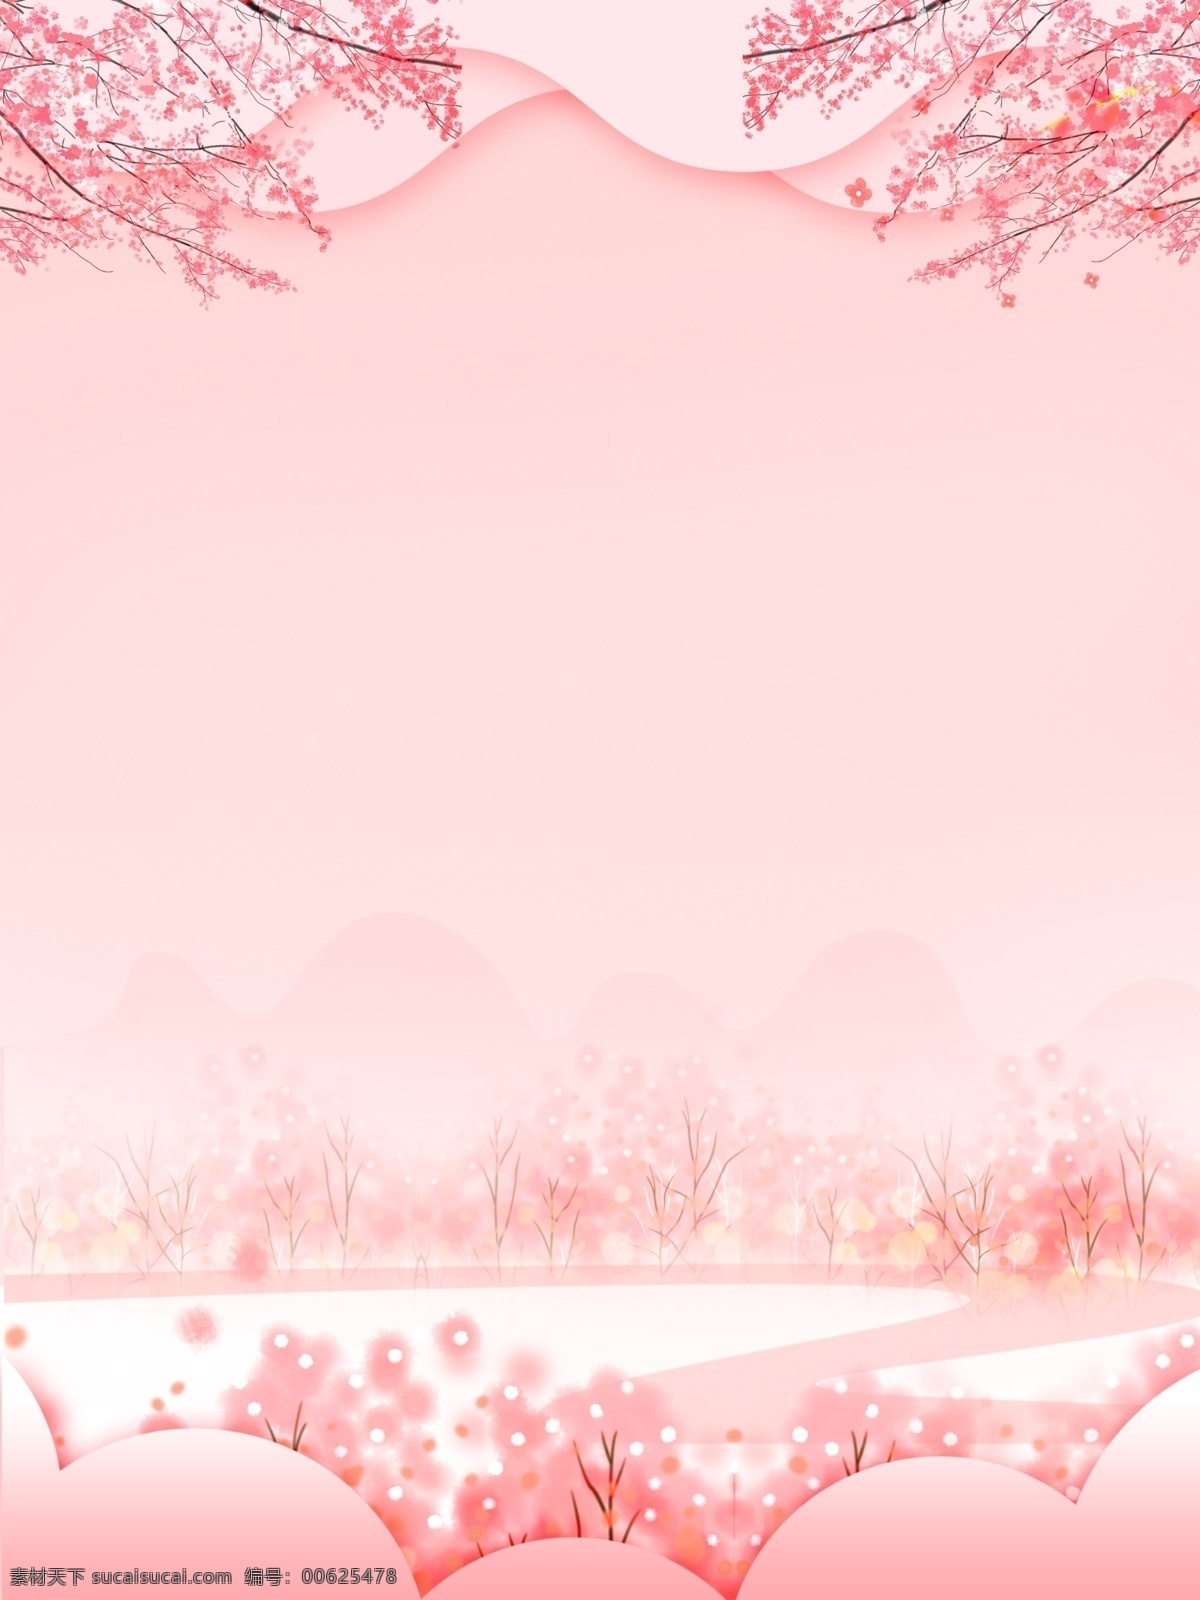 清晰 唯美 粉色 系 樱花 林 背景 背景素材 植物背景 psd背景 花卉背景 通用背景 樱花林背景